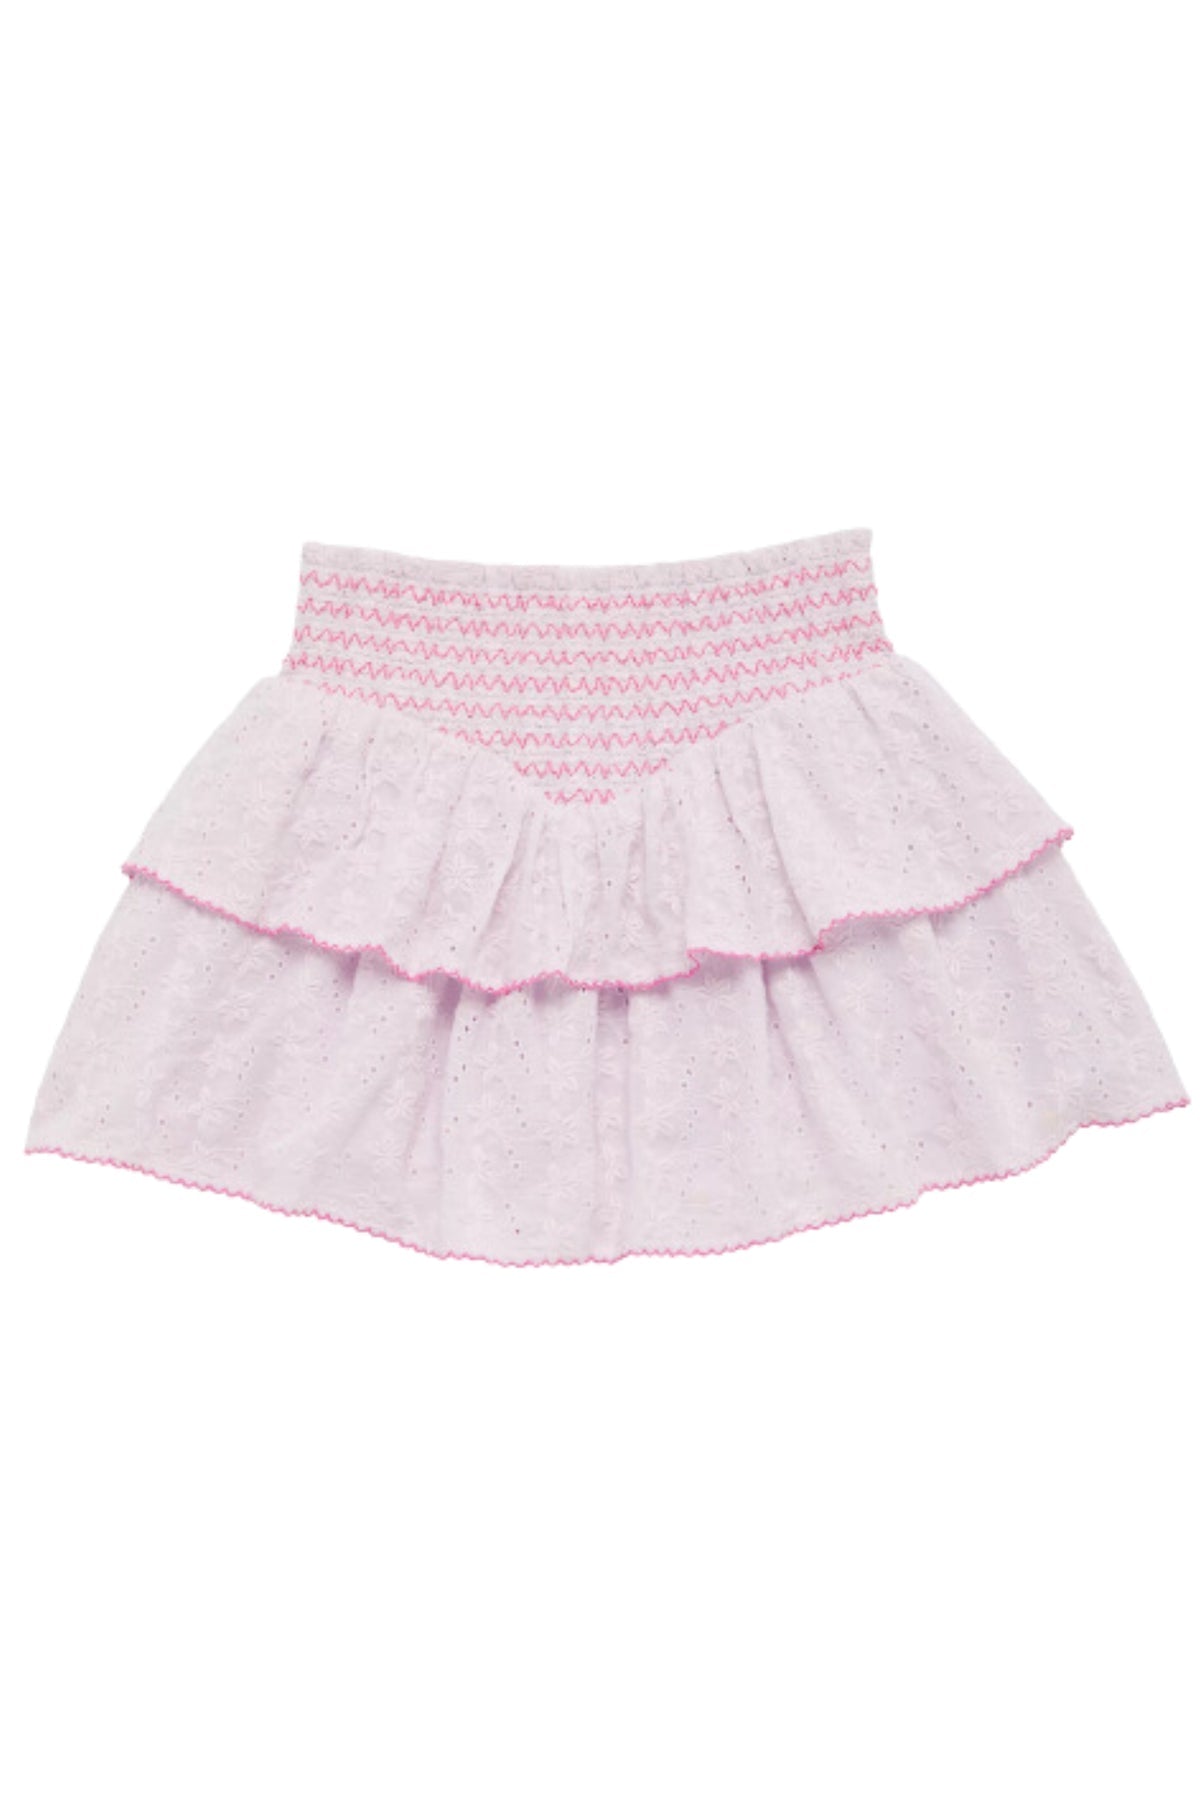 KatieJ NYC - Tween - Baby Pink Karlie Embroidered Skirt